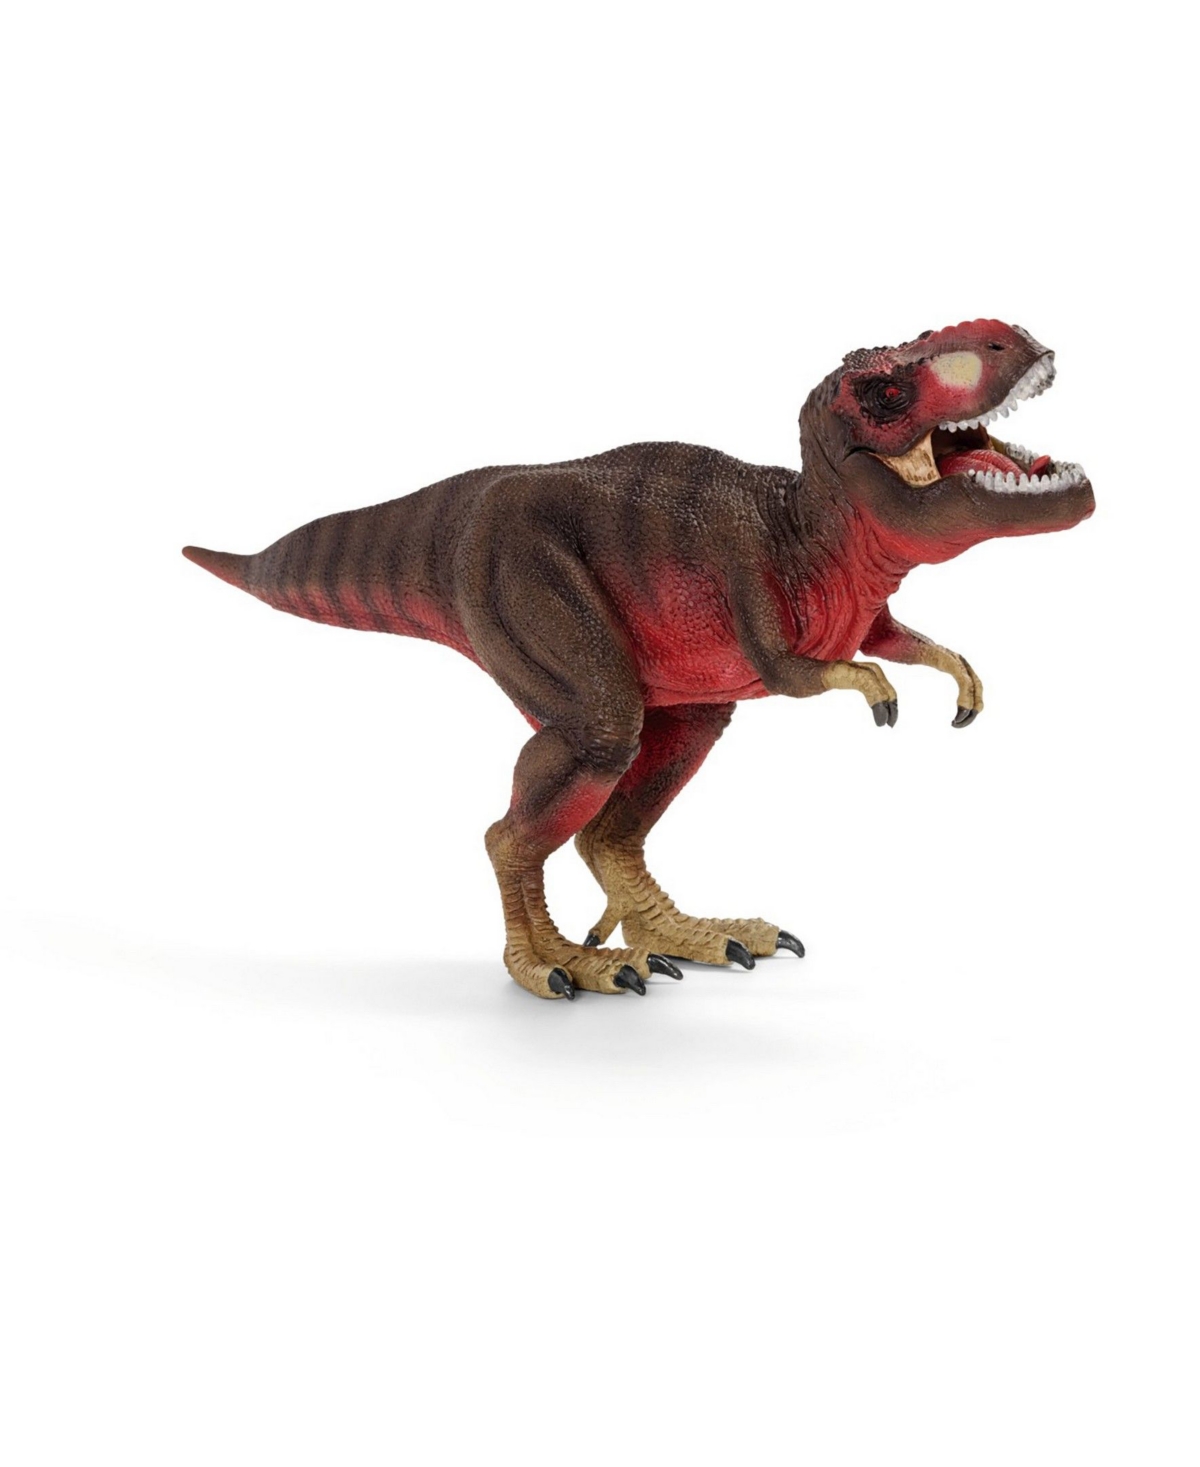 Schleich Babies' Dinosaurs Tyrannosaurus Rex In Brown